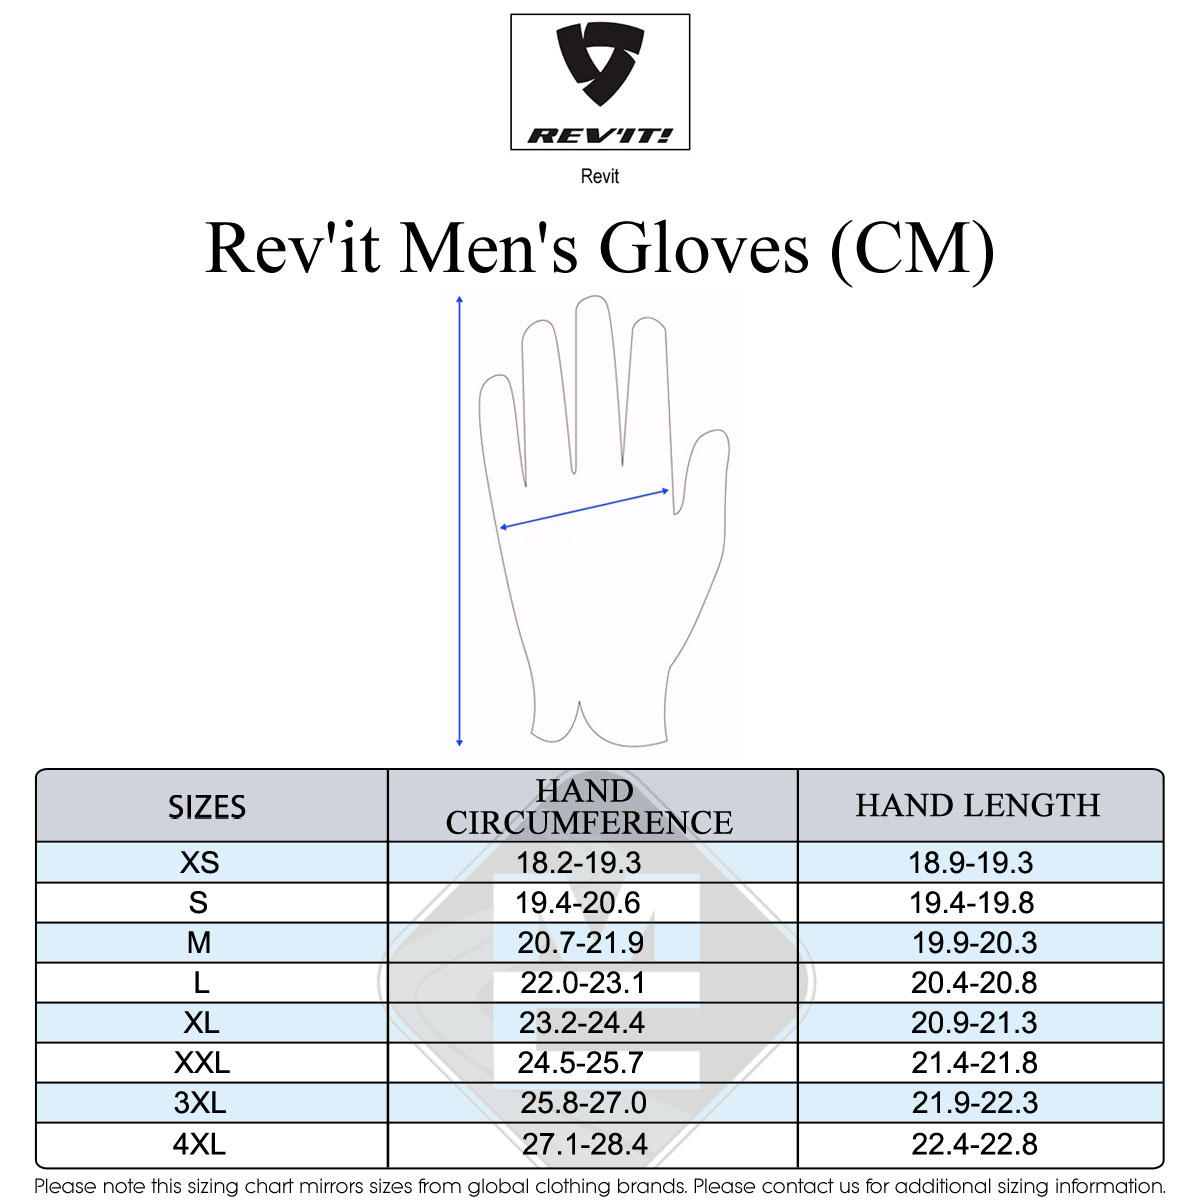 Revit Men's Size Guide